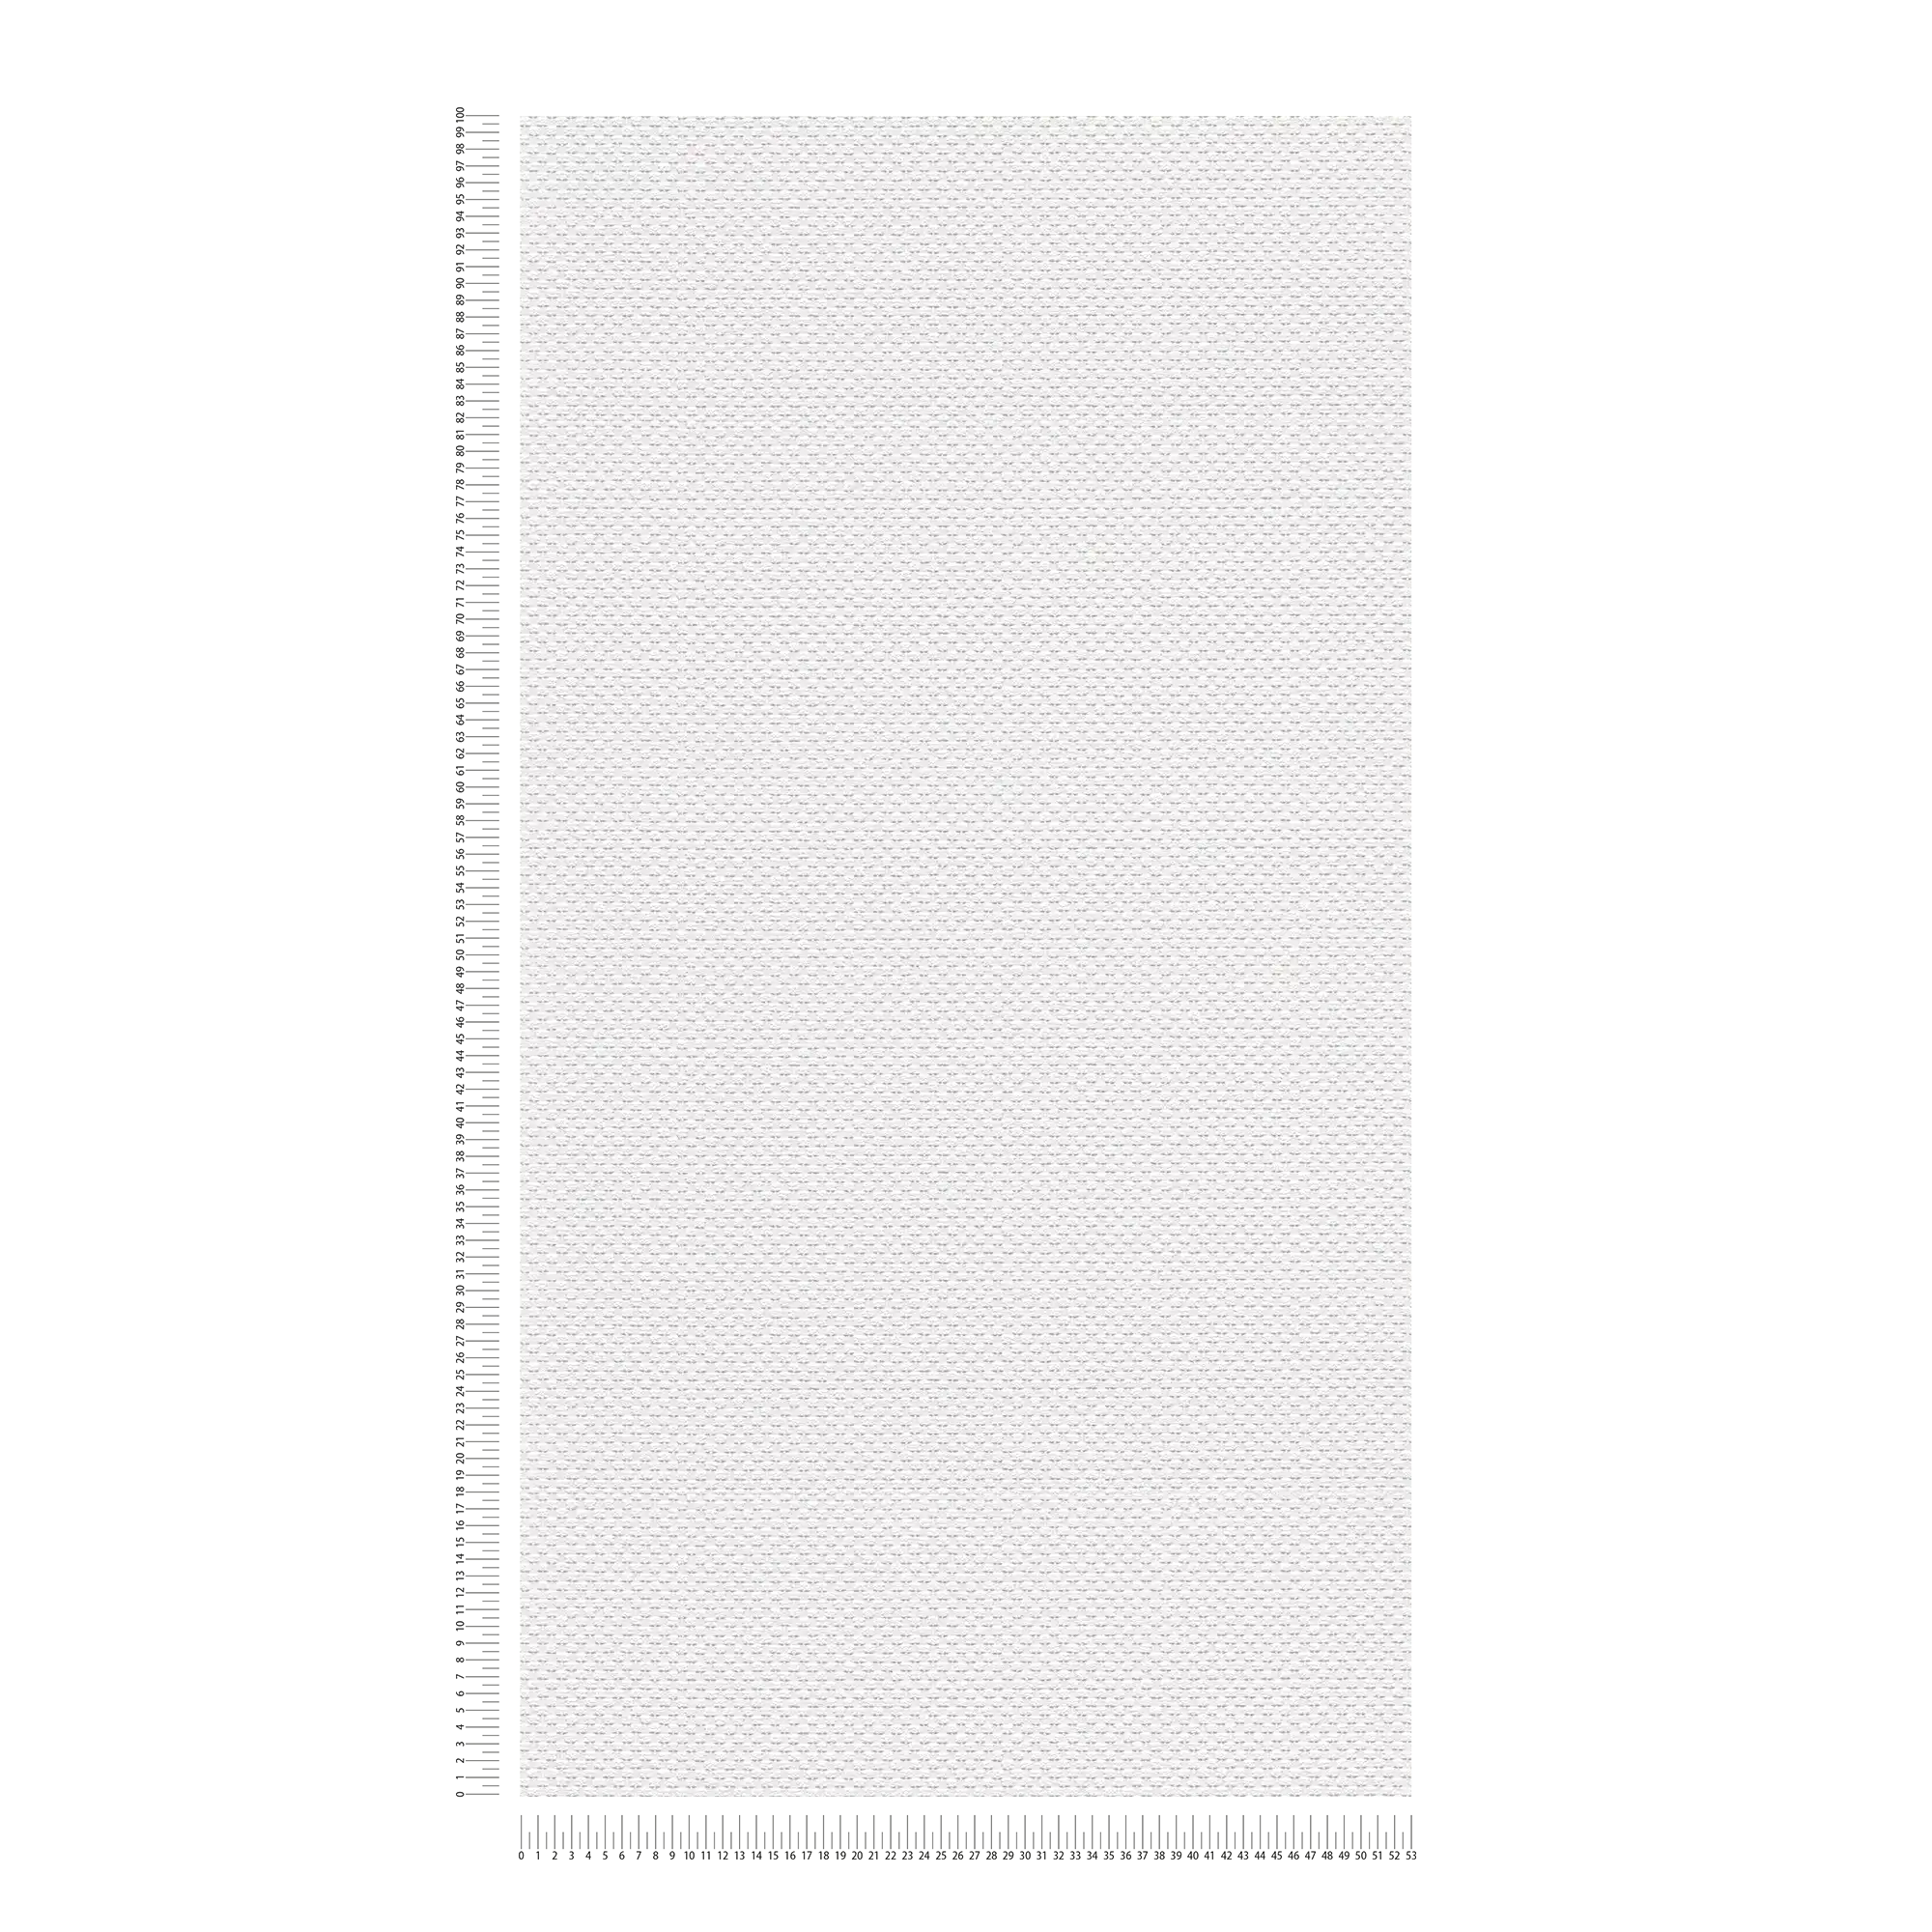             Unifarbene Papiertapete mit Gewebe-Look – Weiß
        